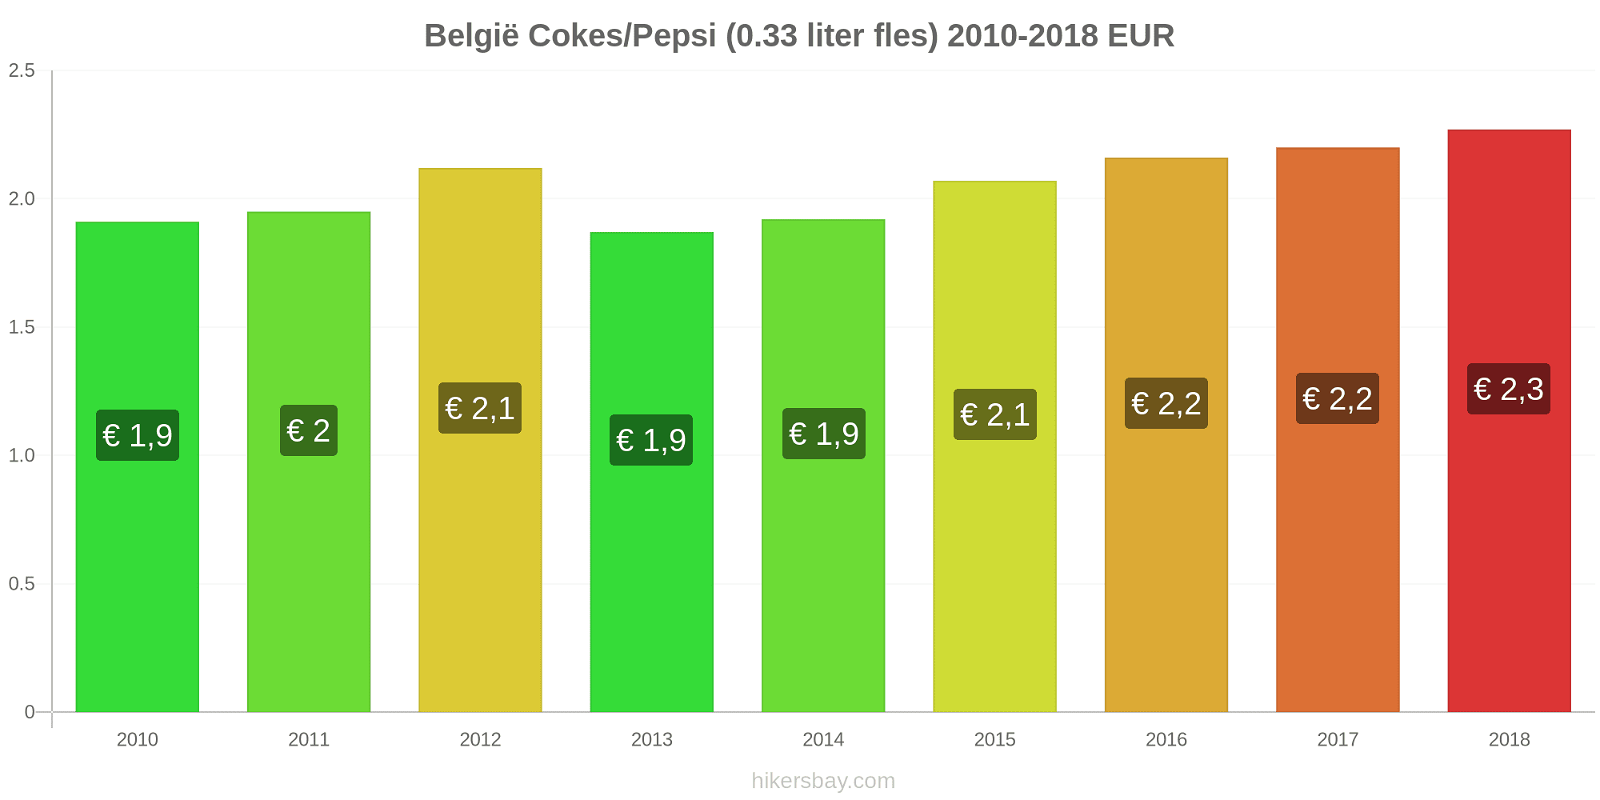 België prijswijzigingen Cokes/Pepsi (0,33 literfles) hikersbay.com